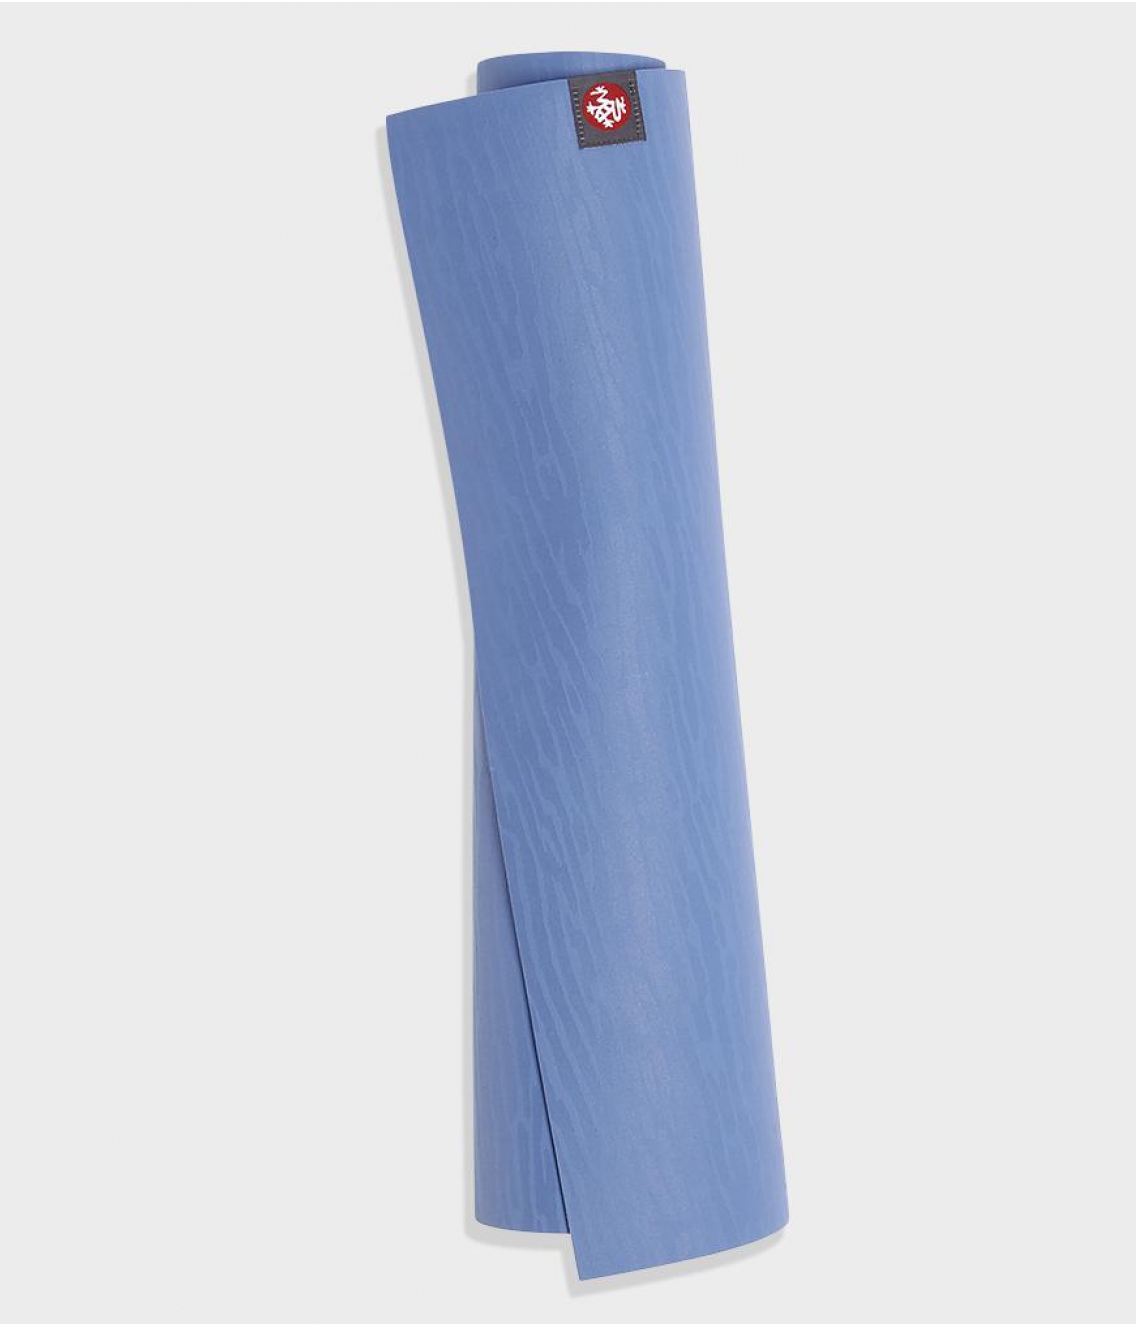 Профессиональный каучуковый коврик для йоги Manduka eKO lite 180*61*0,4 см - Shade Blue